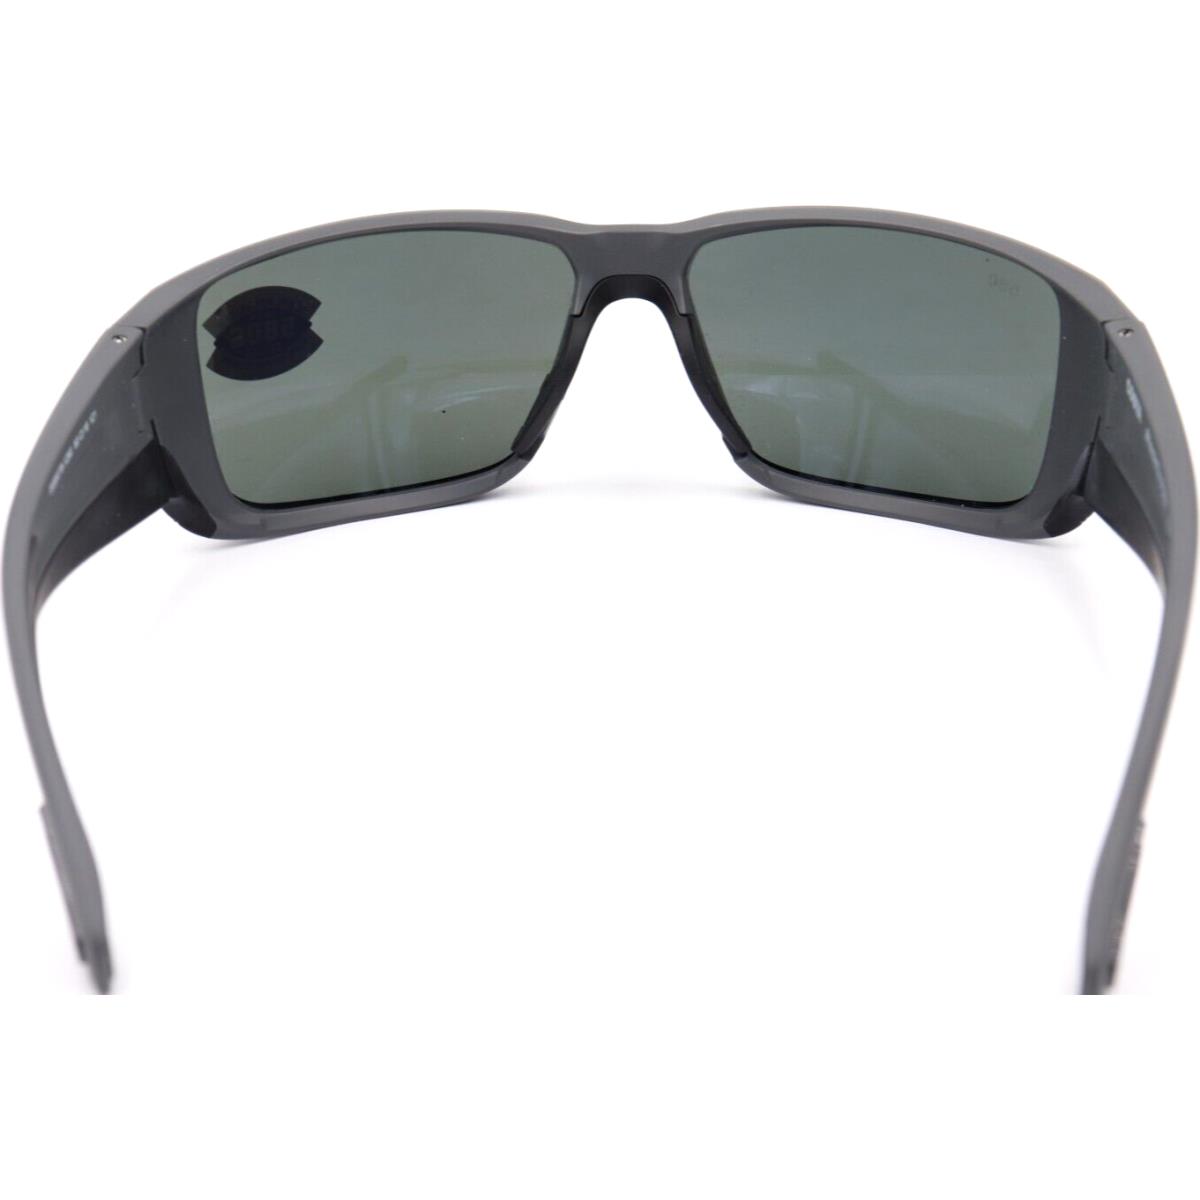 Costa Del Mar sunglasses BLACKFIN PRO - Matte gray Frame, Gray Lens 1